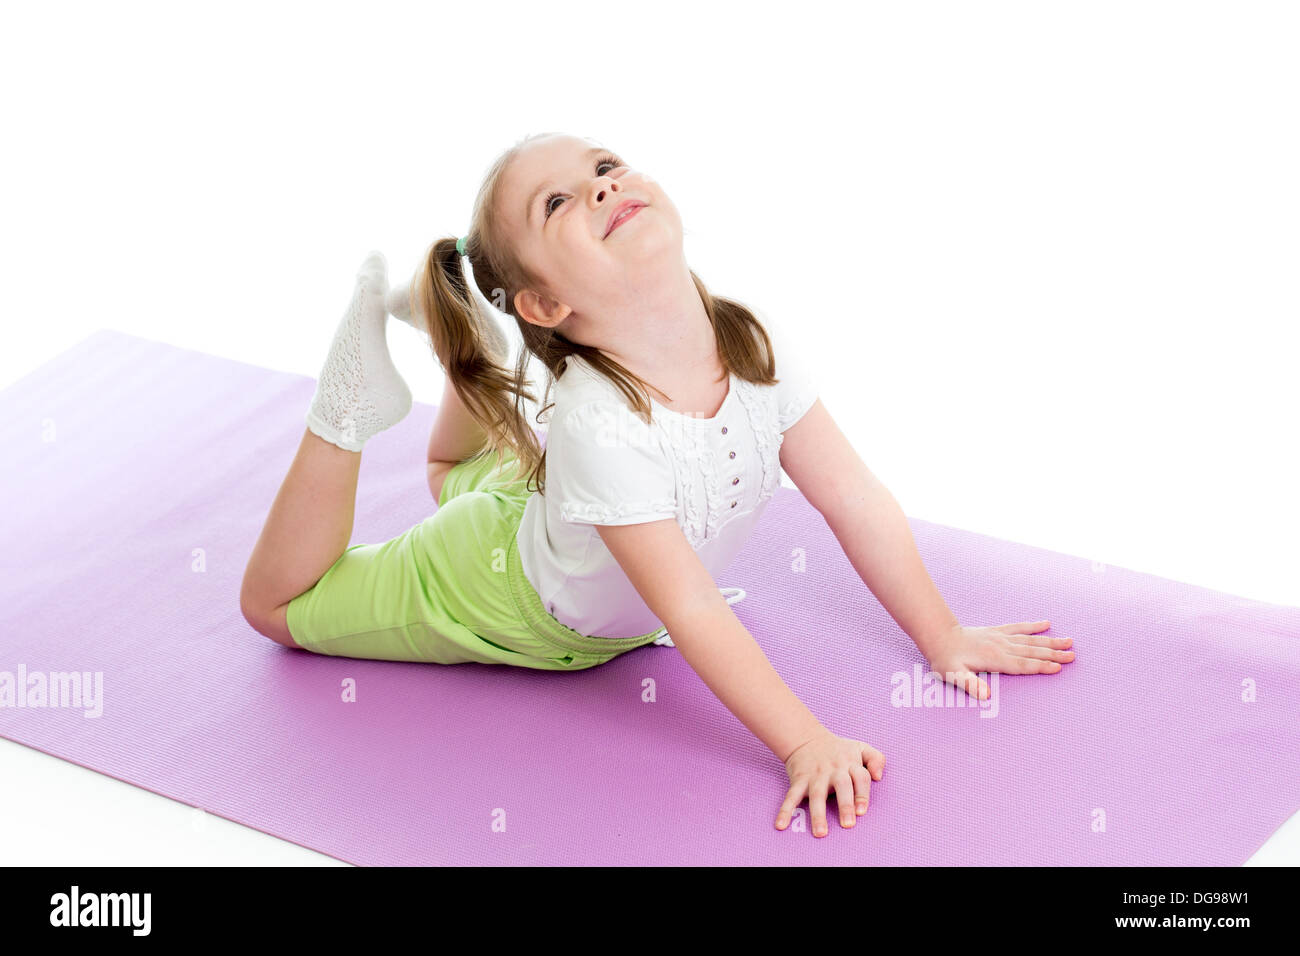 Young girl doing gymnastics Stock Photo